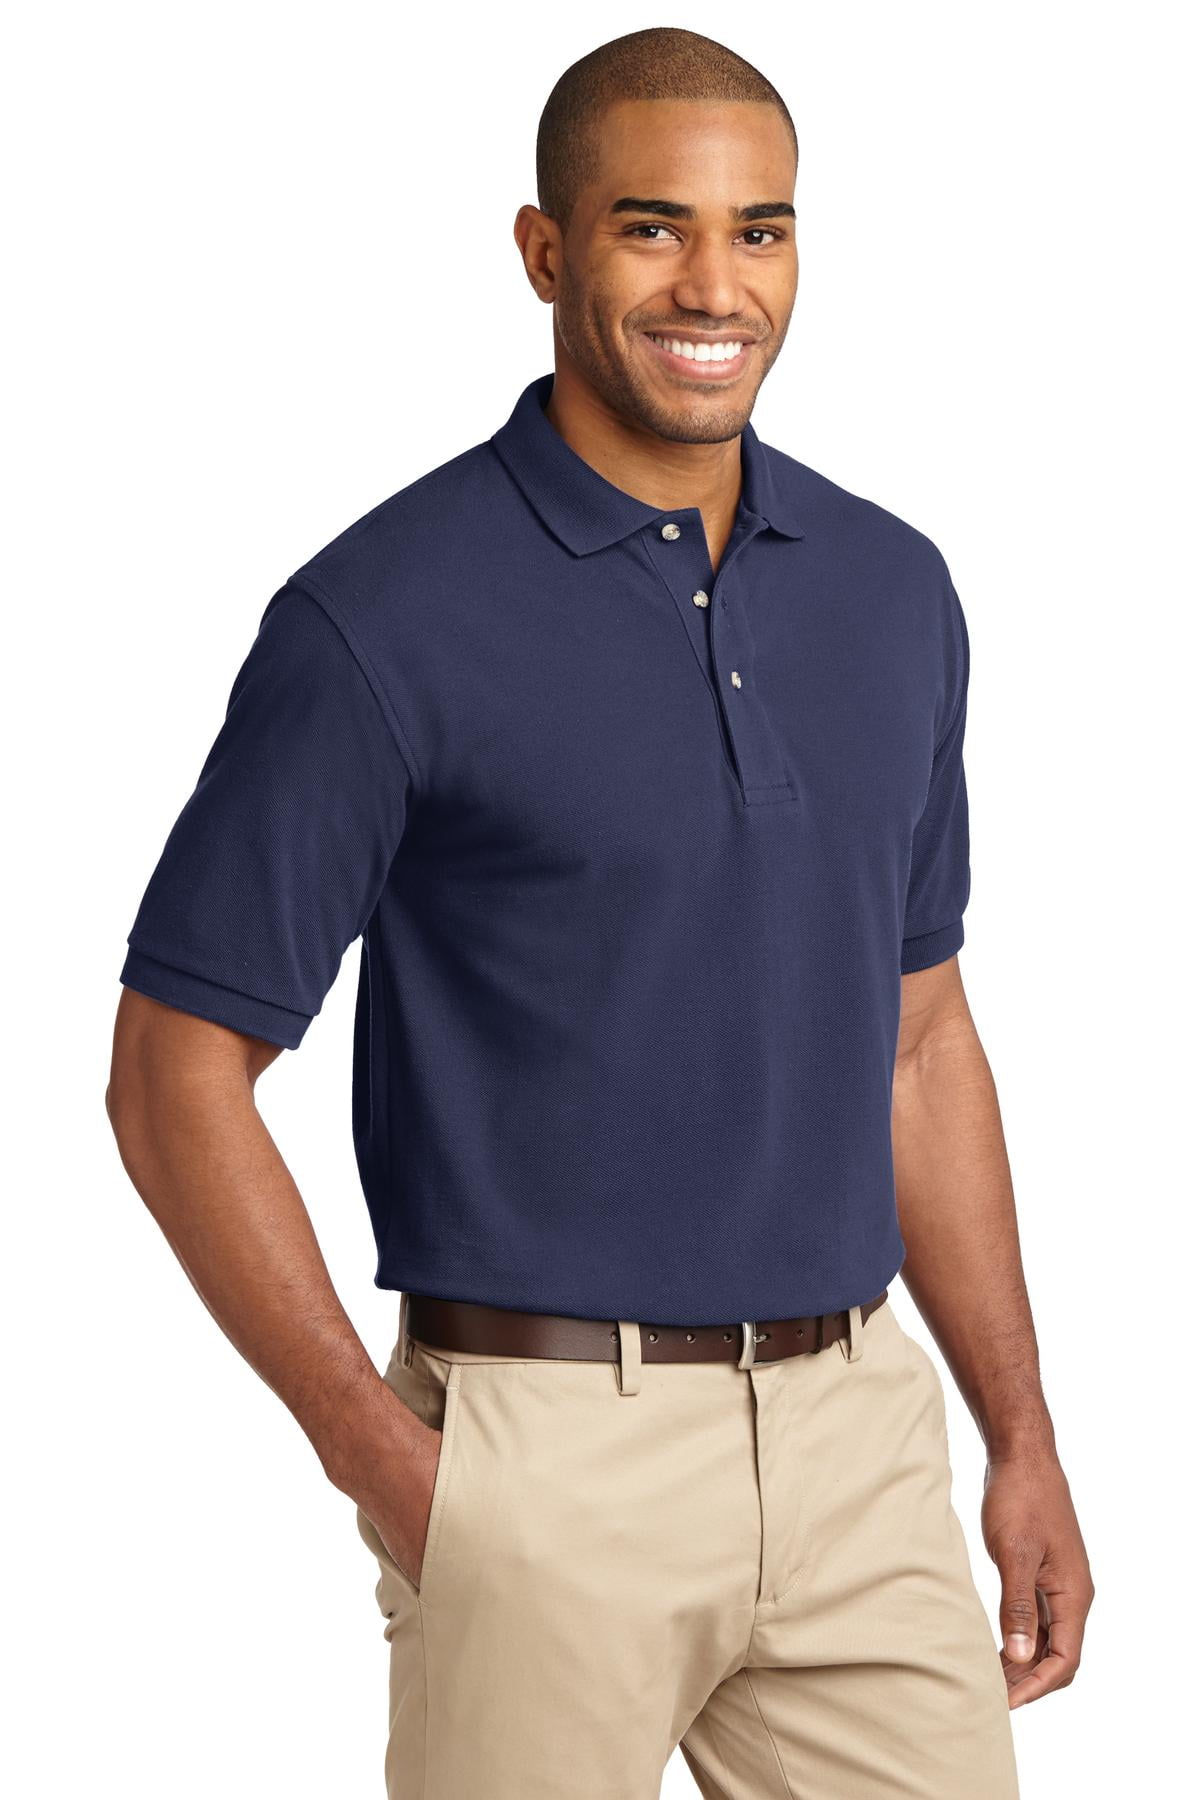 SanMar Men's Heavyweight Cotton Pique Polo Shirt - K420, Navy, 2XL